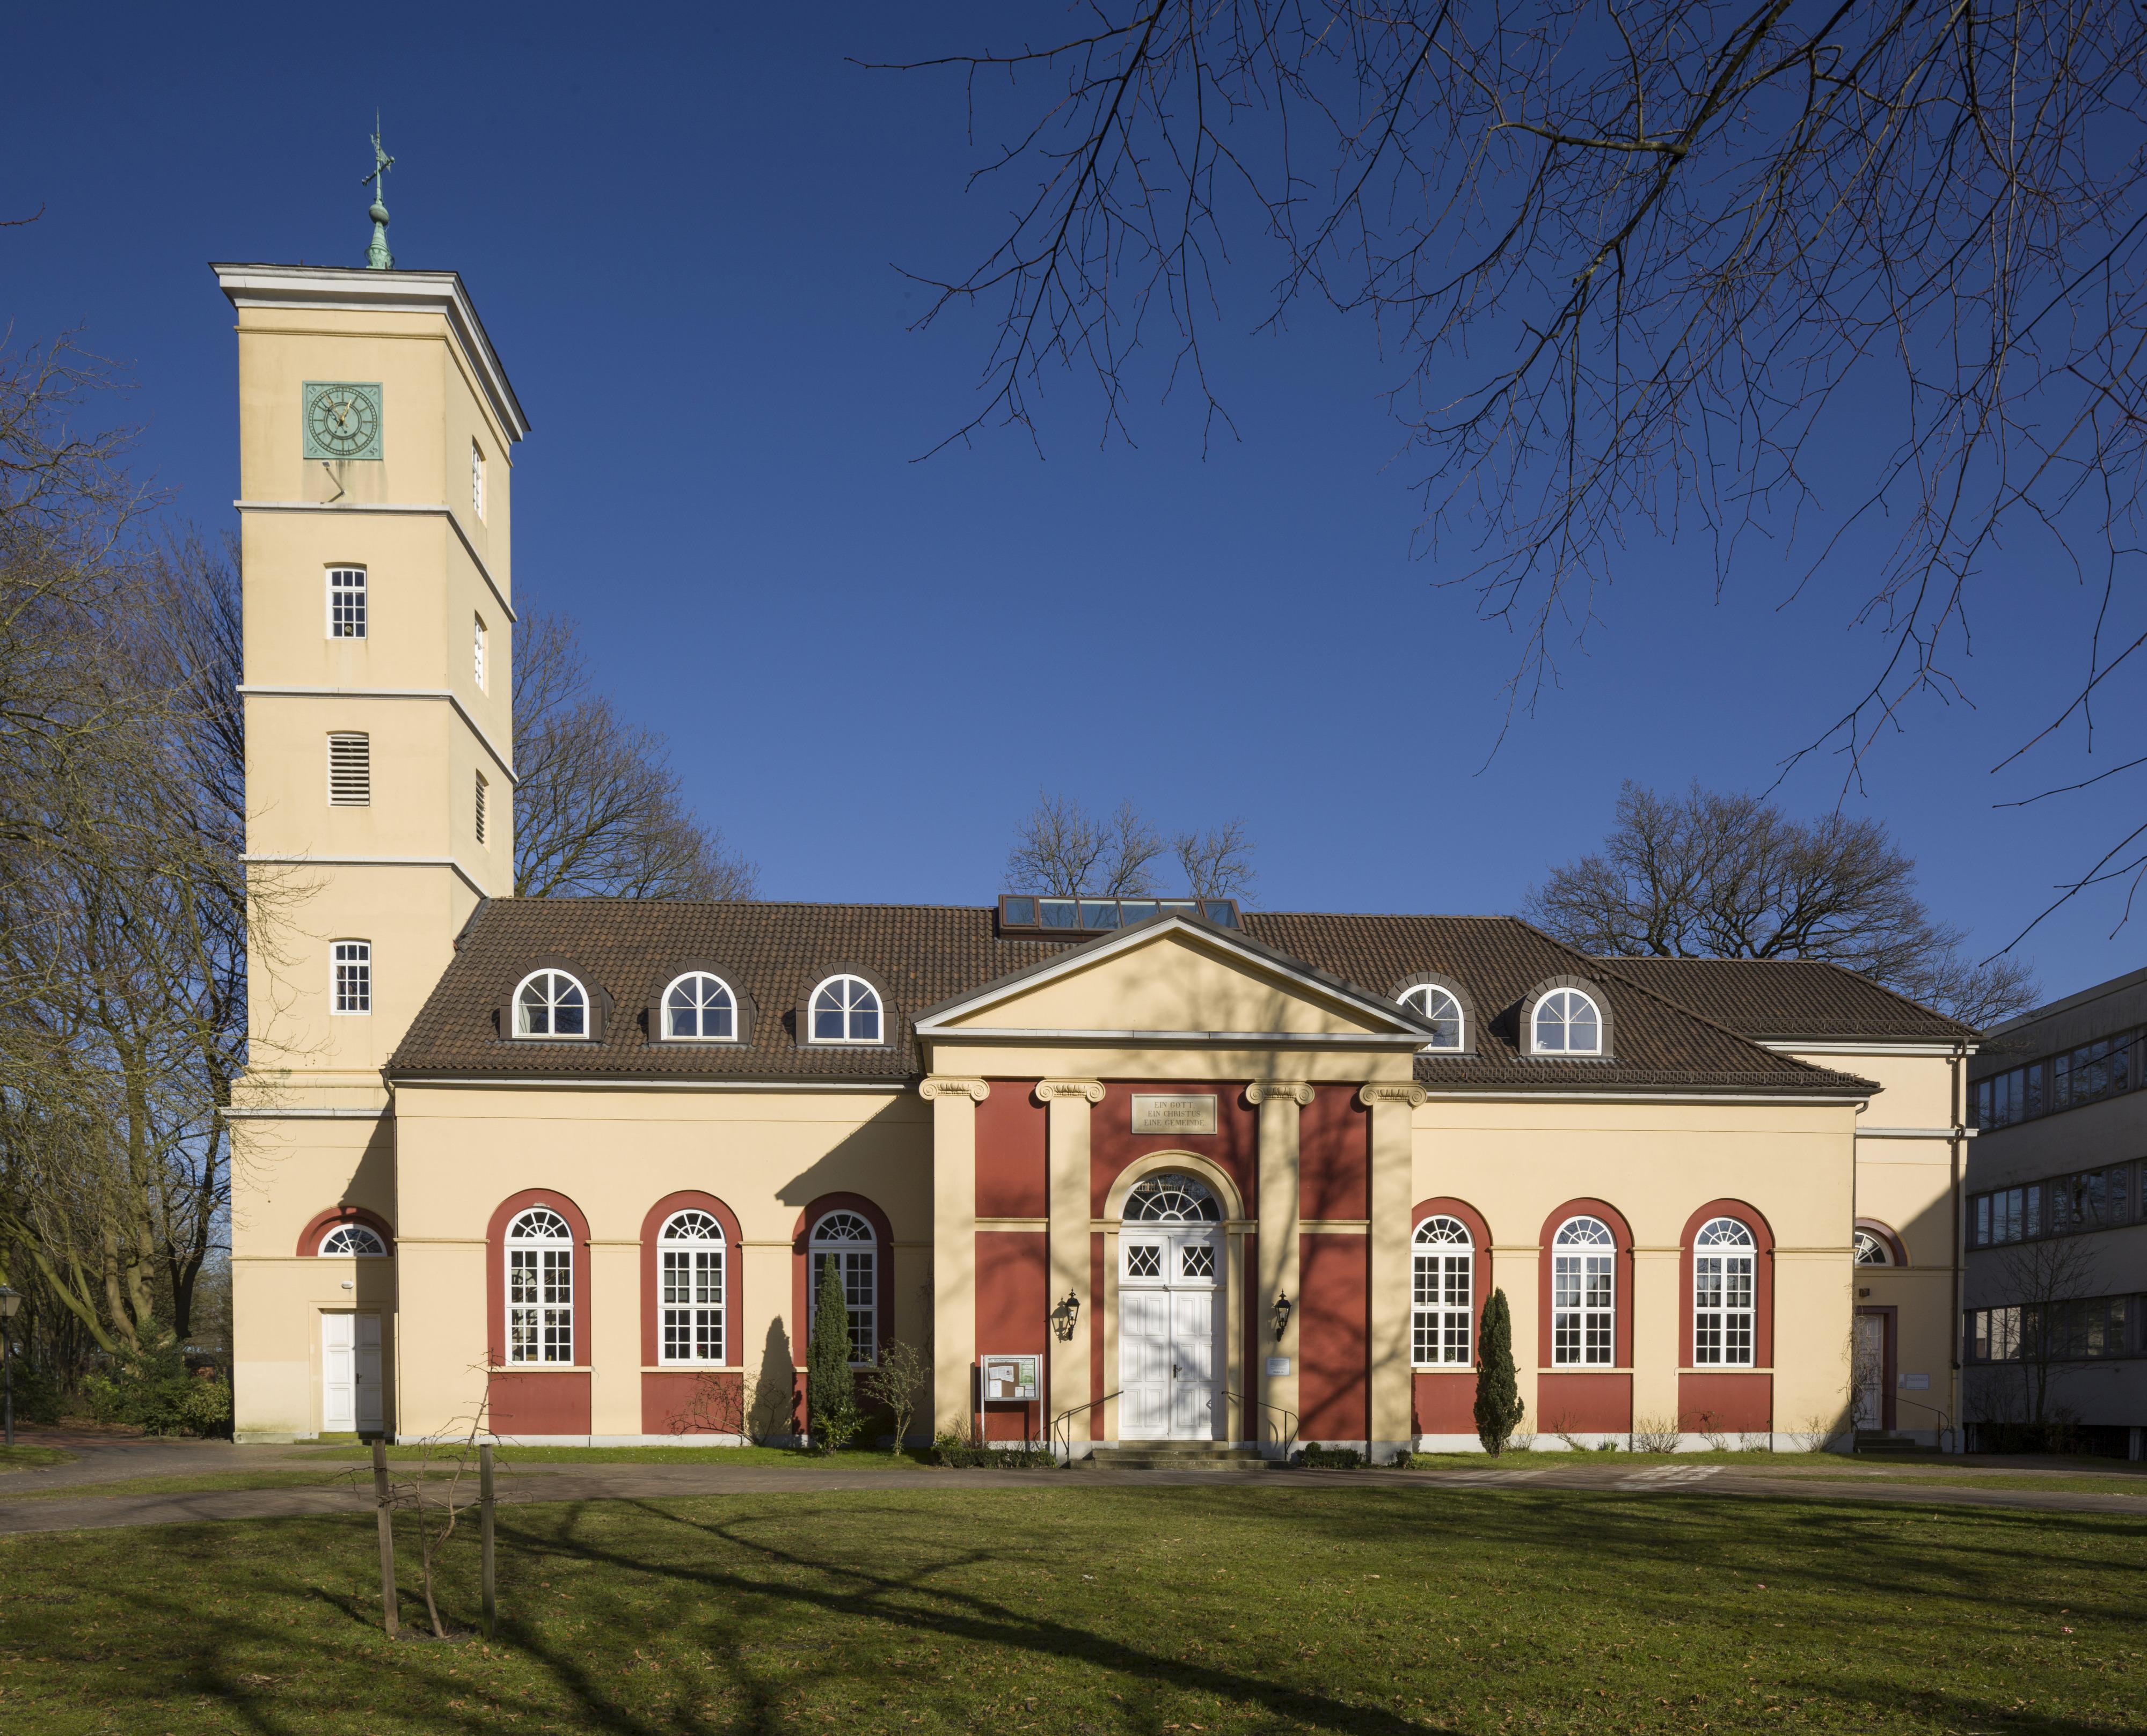 Bild der Vegesacker-Kirche - Kirchengemeinde Vegesack